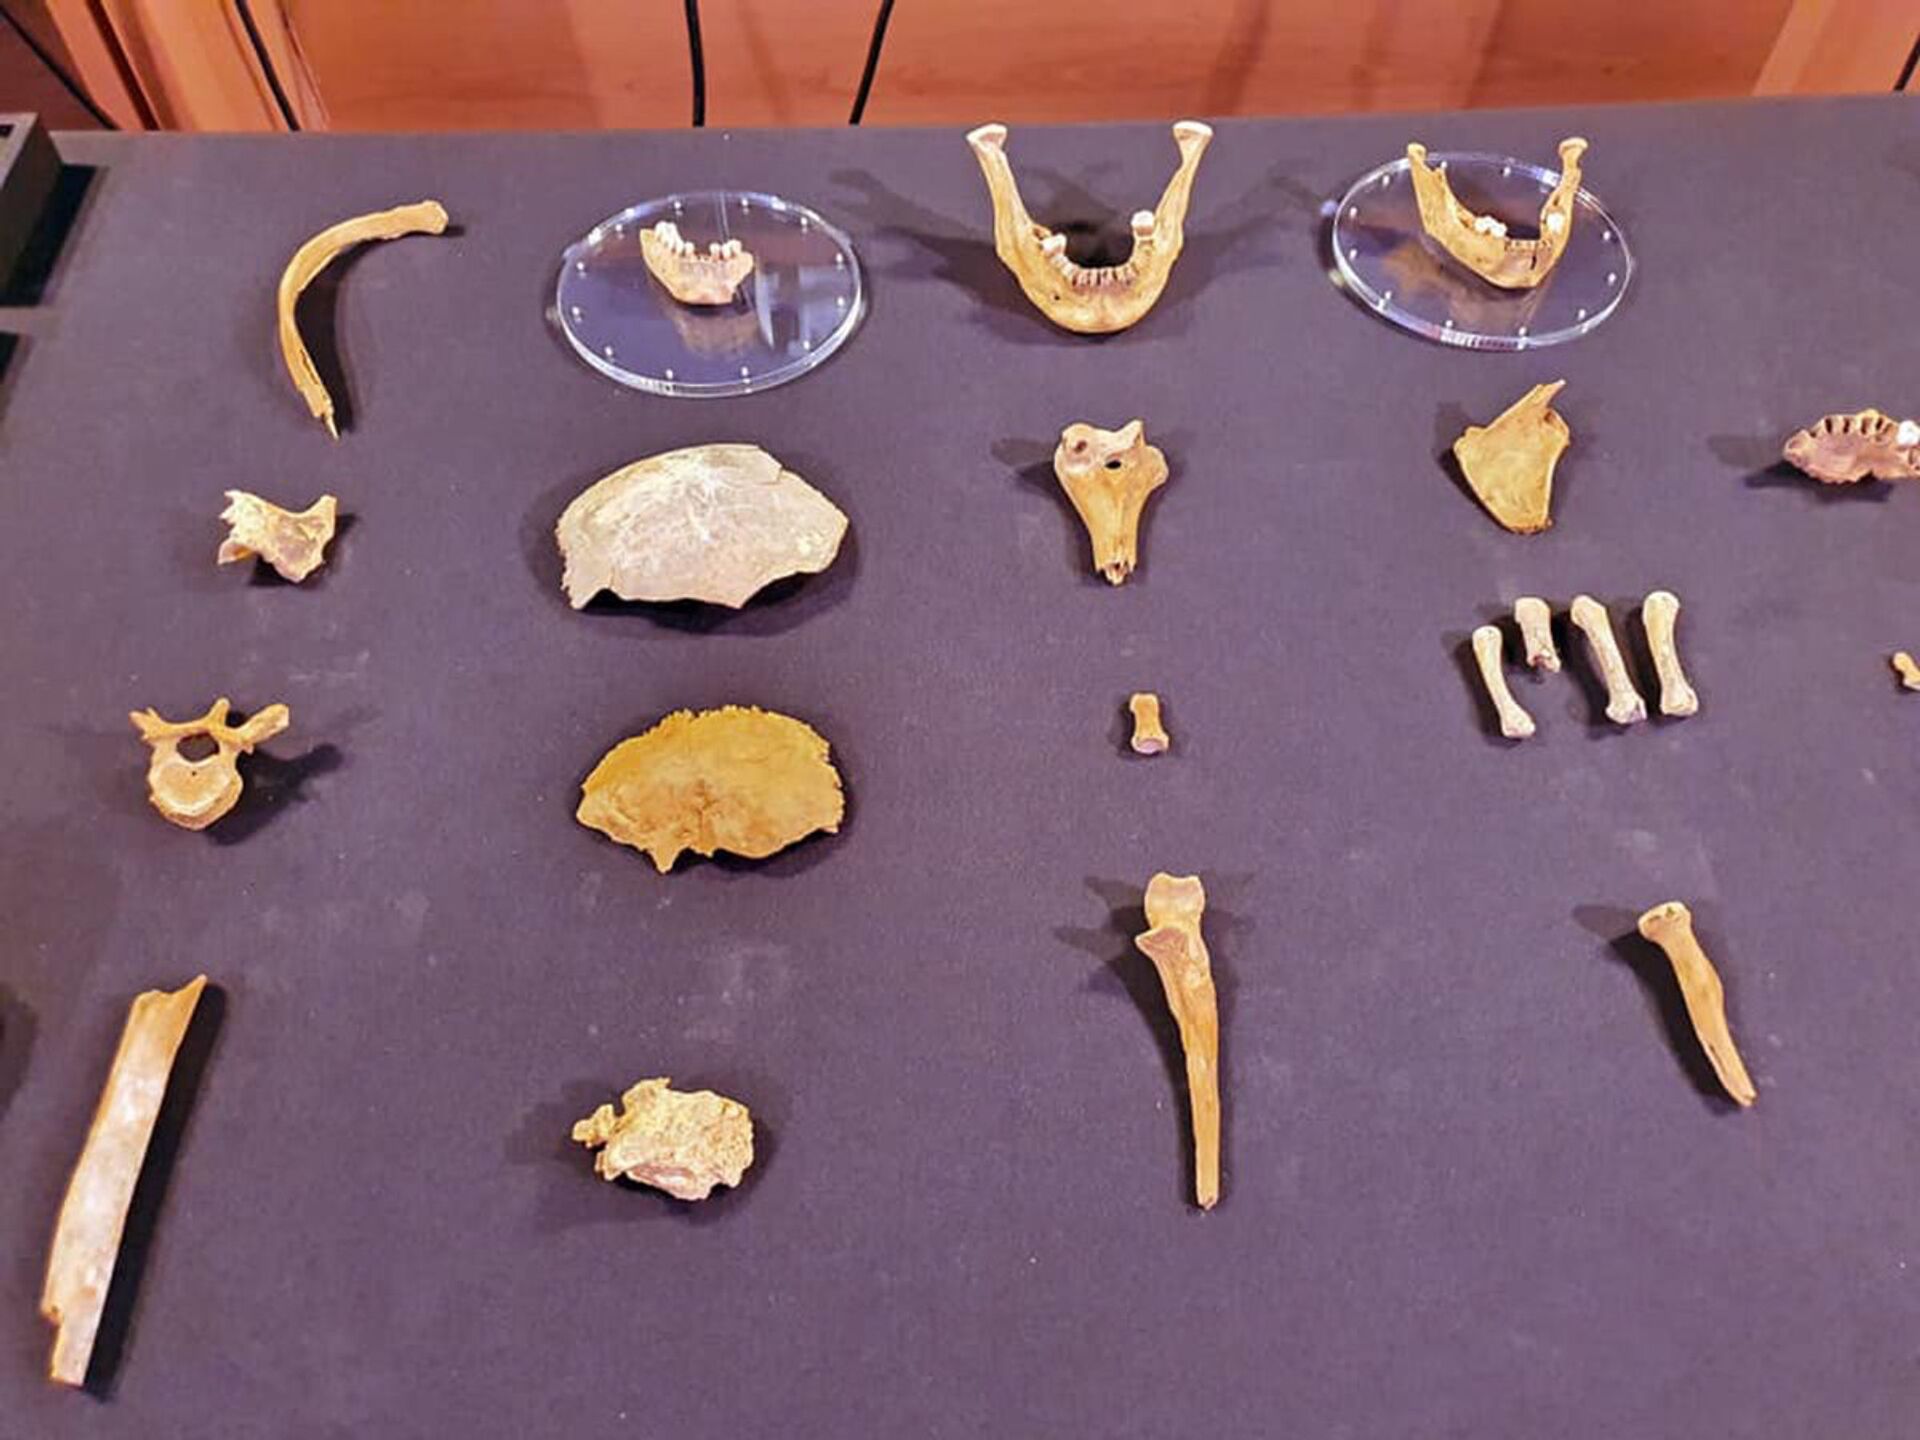 FOTOS de sepultura na Espanha revelariam restos humanos e ferramentas de 3.000 anos - Sputnik Brasil, 1920, 10.08.2021